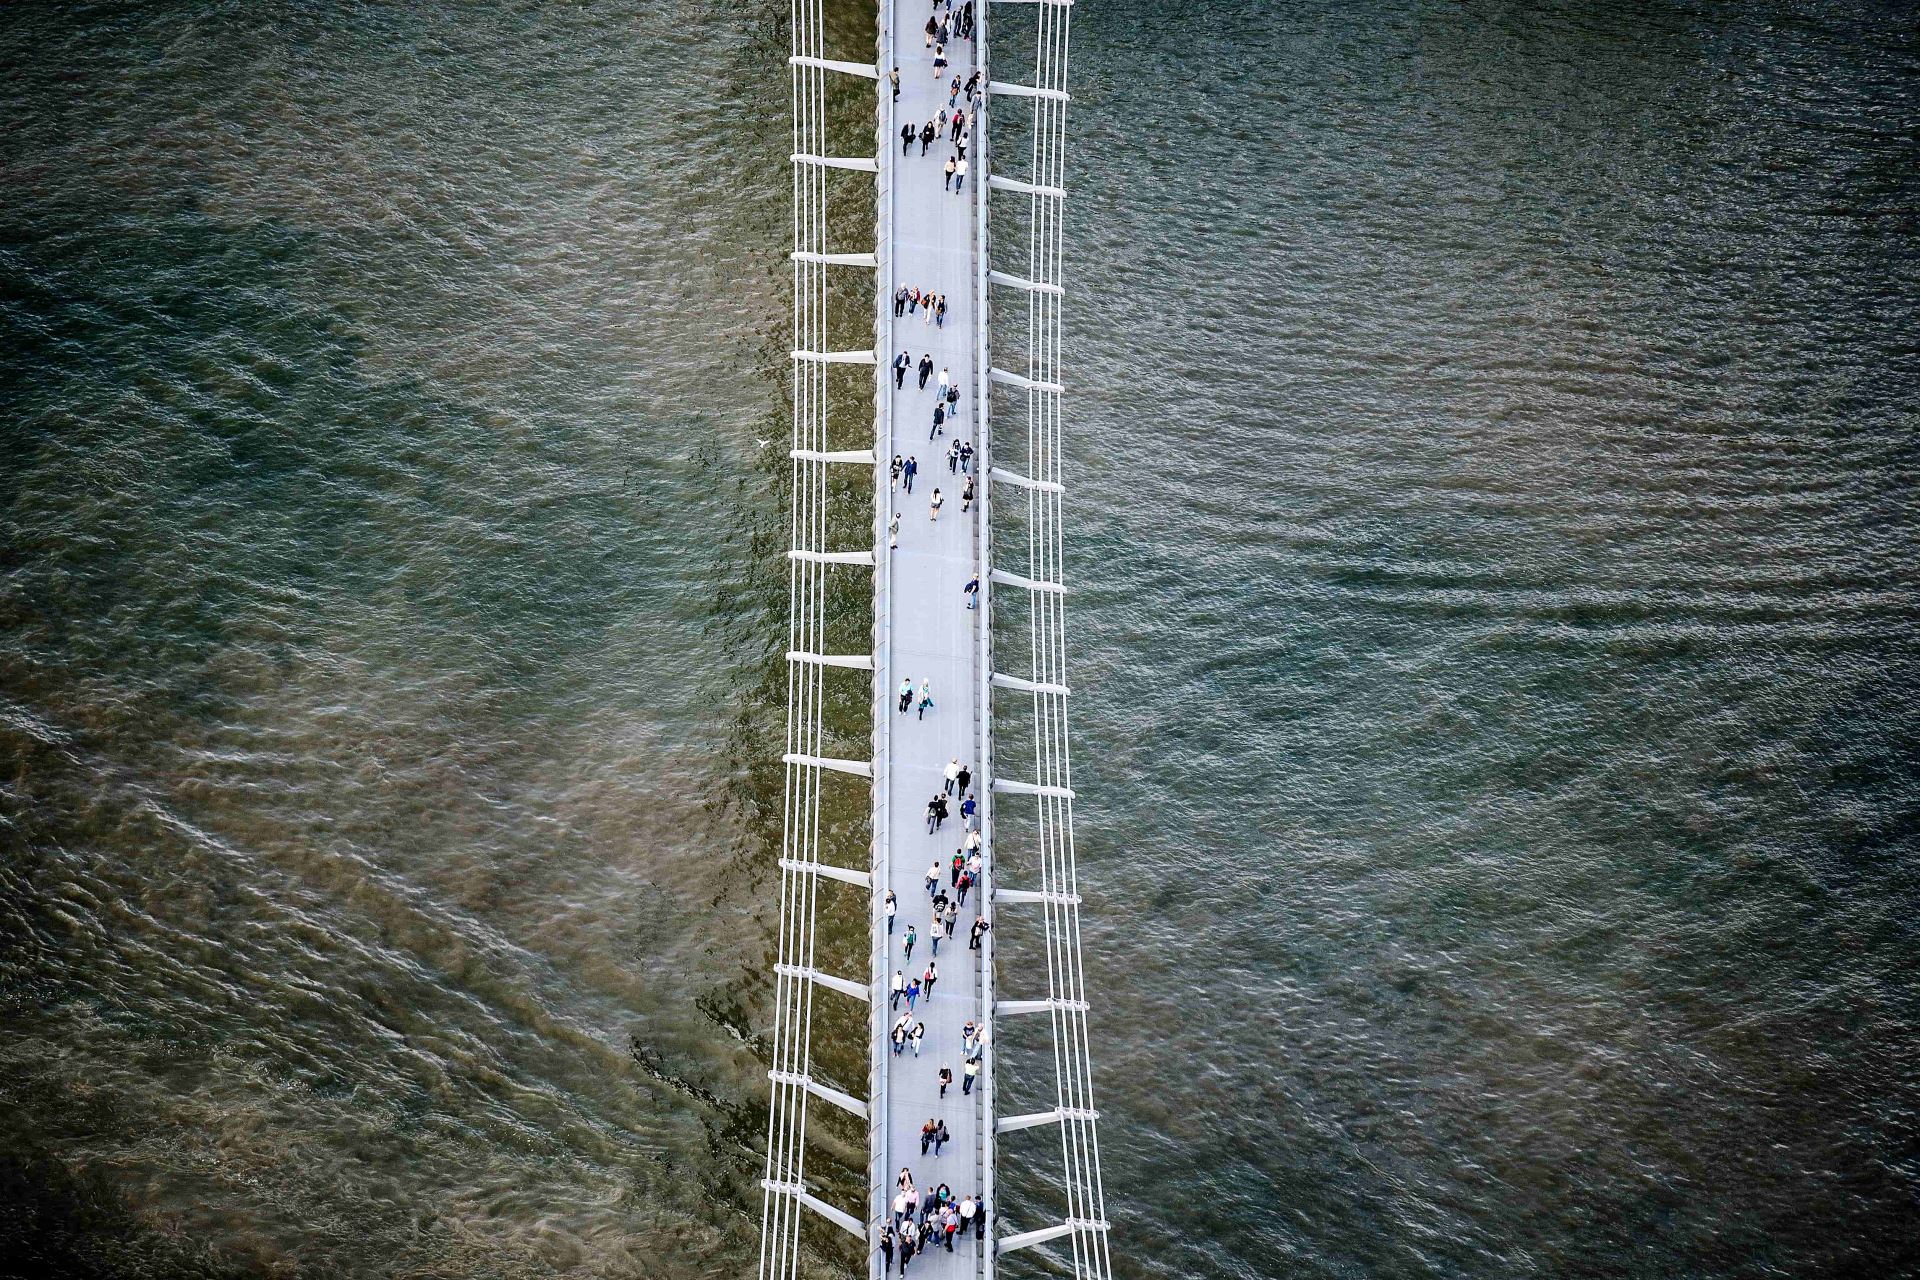 People Bridge